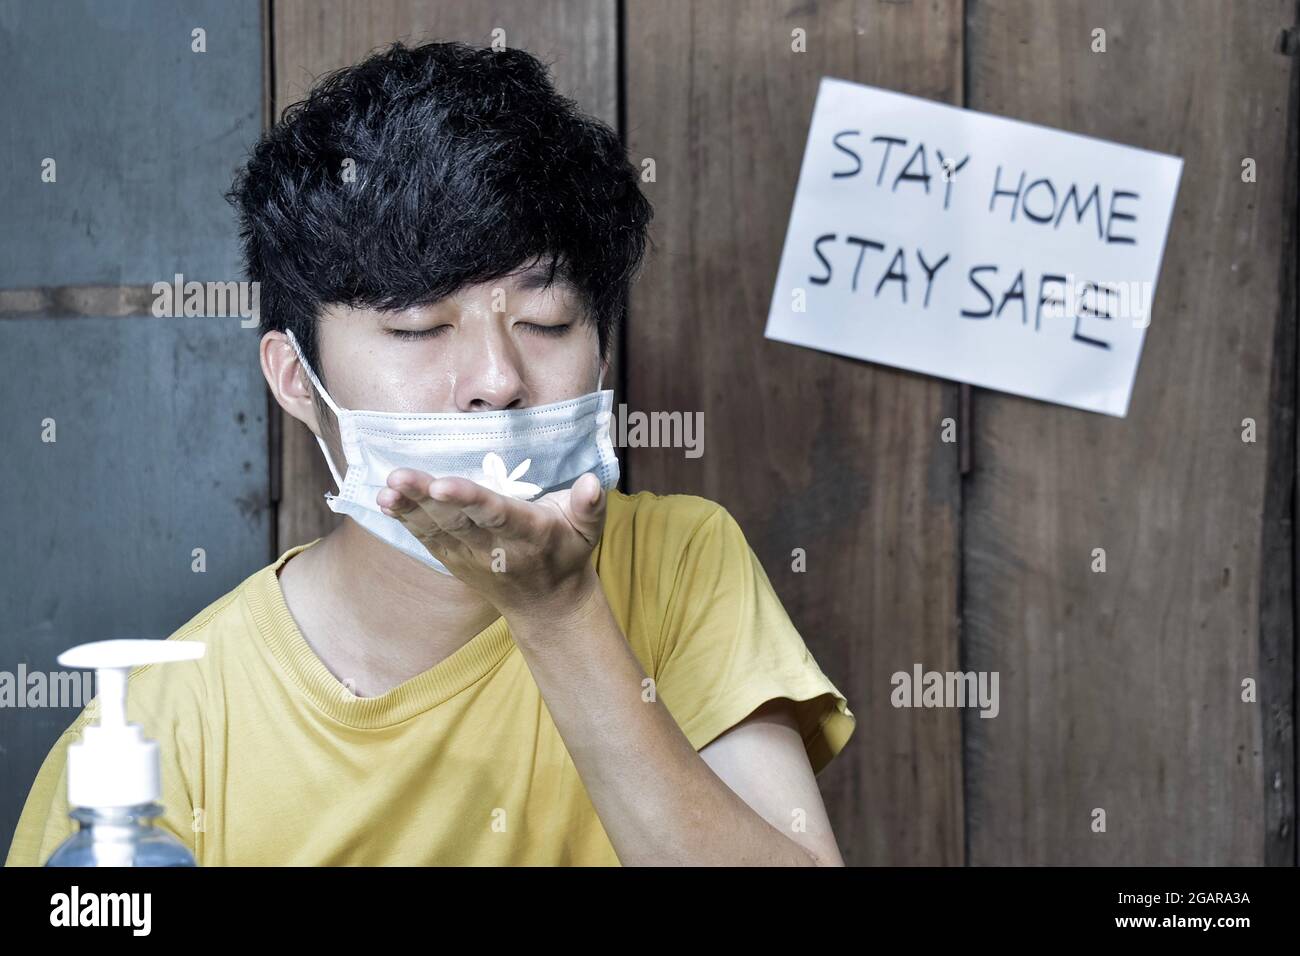 Sud-est asiatico, cinese e Myanmar giovane uomo con influenza fredda ottiene la perdita di odore chiamato anosmia. Indossa una maschera chirurgica e odori di flo di gelsomino Foto Stock